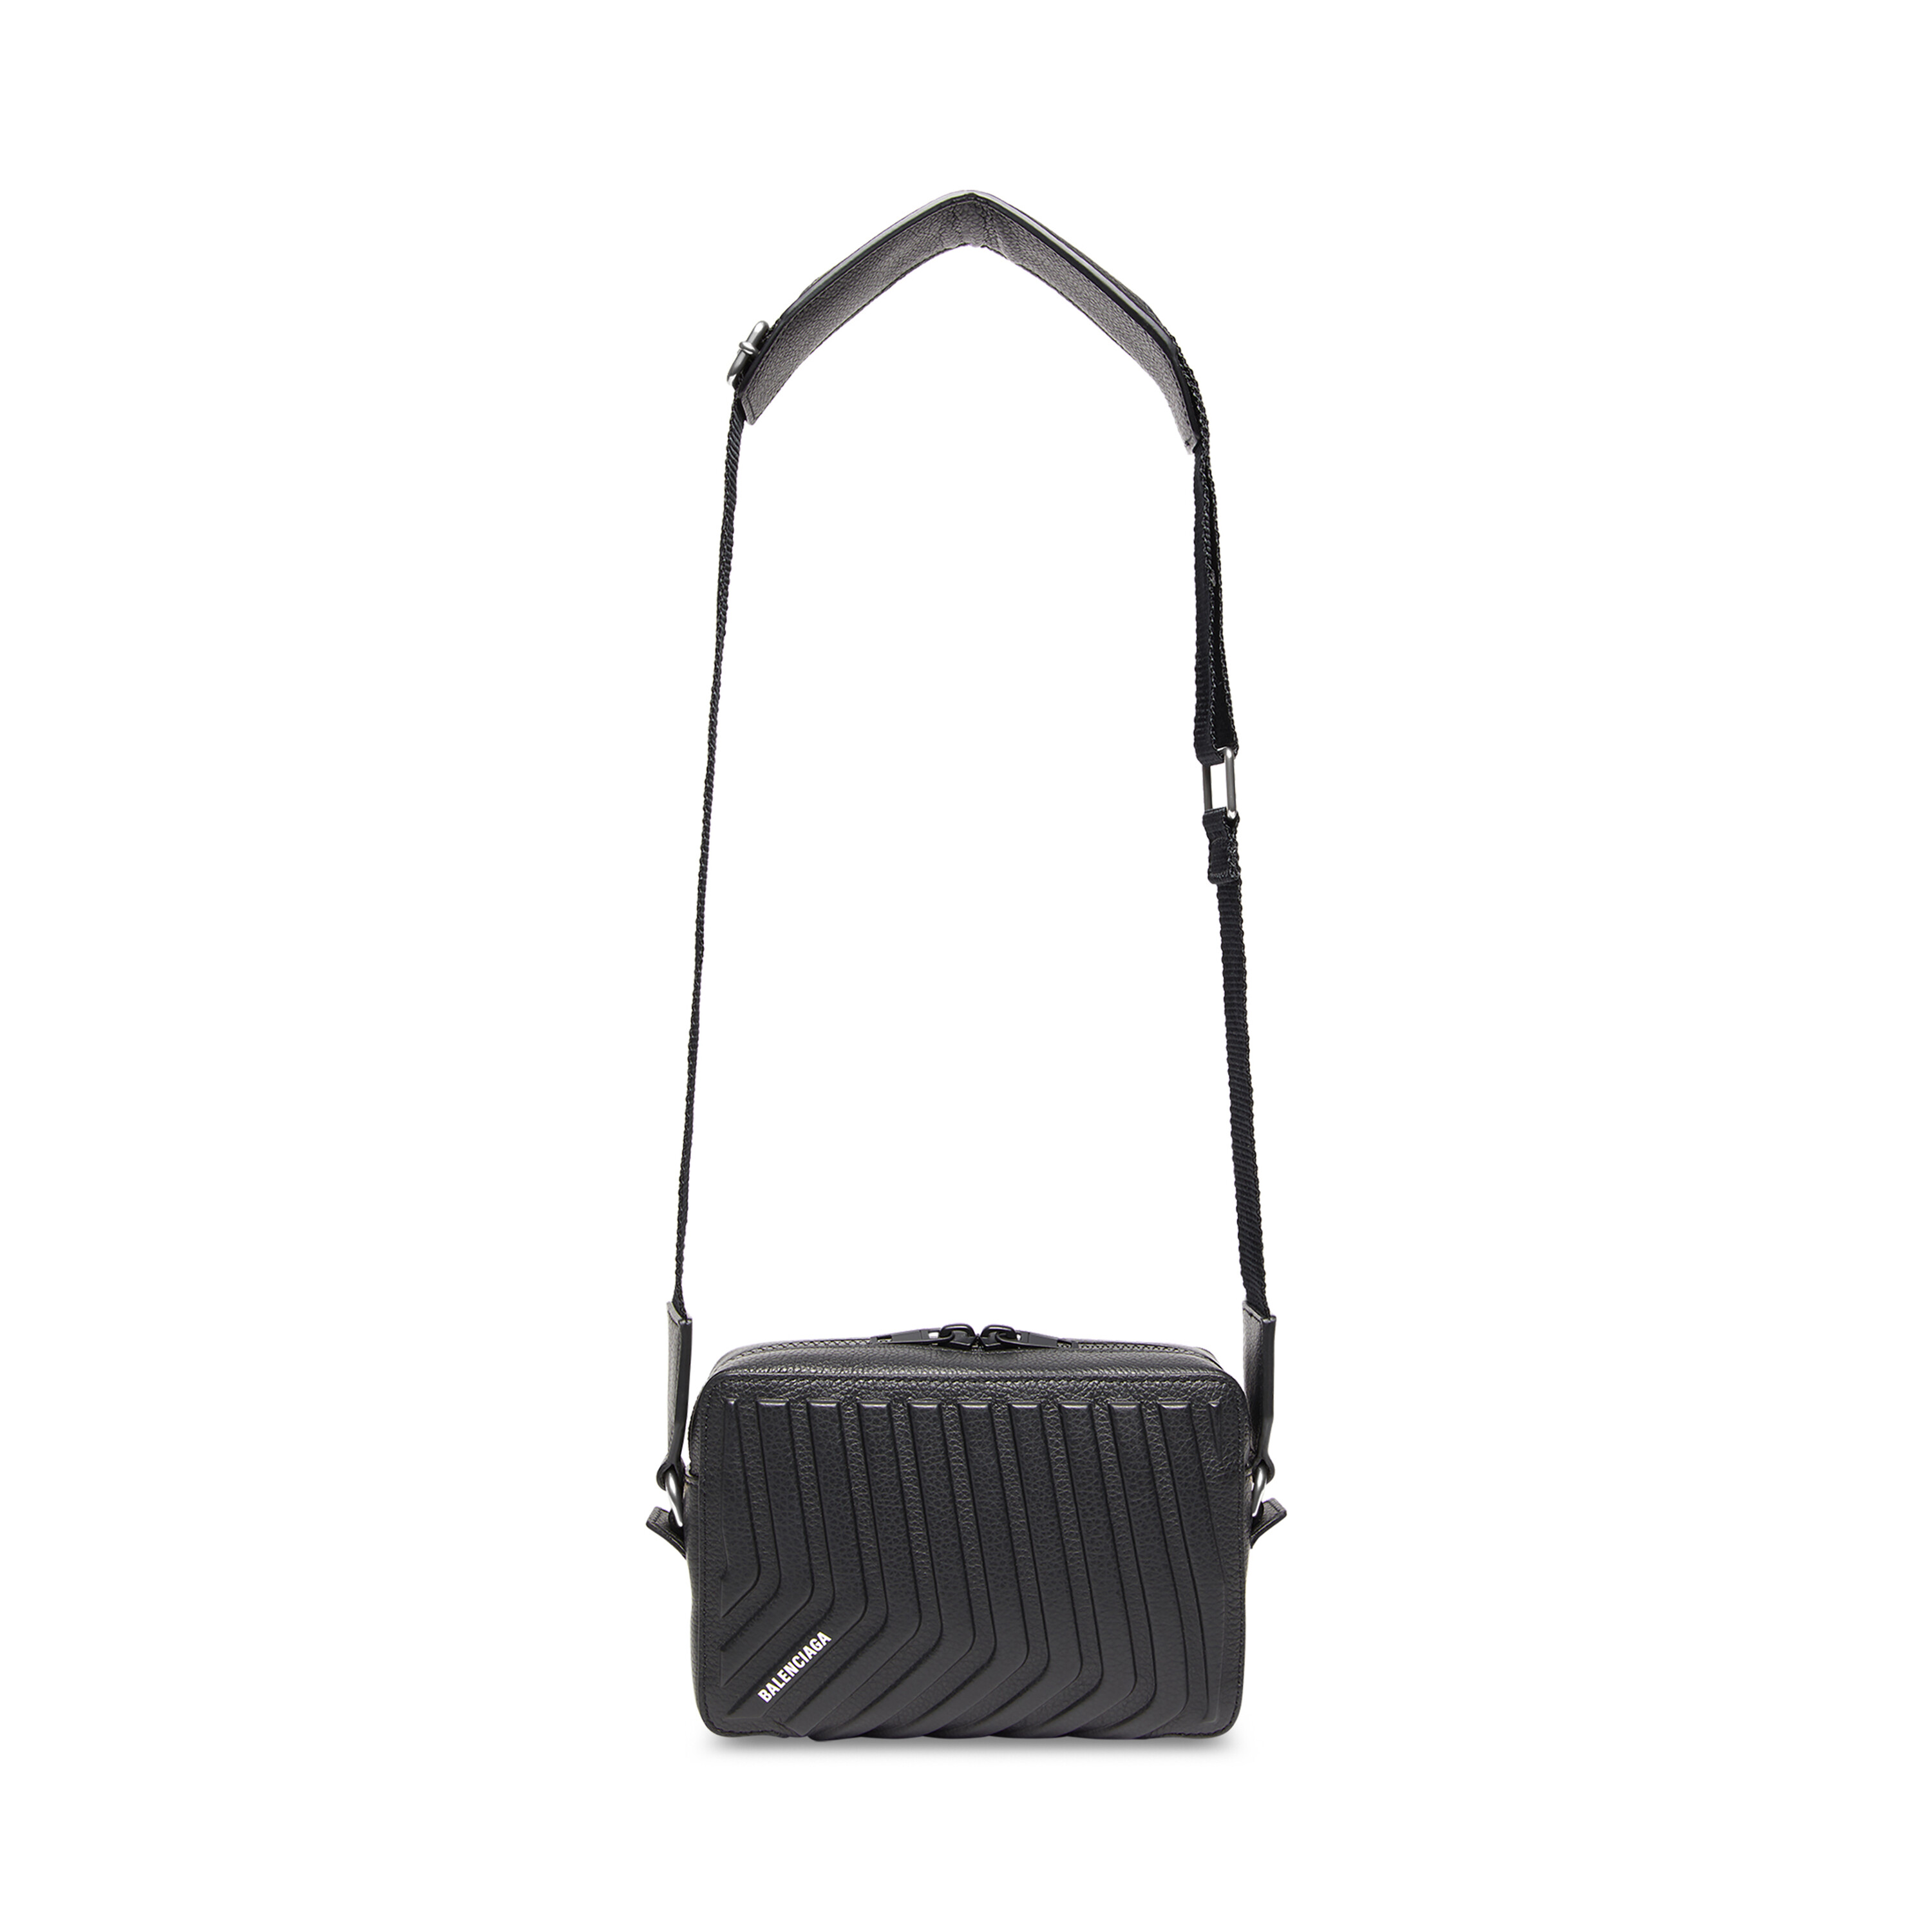 Balenciaga - Women's Everyday Small Camera Bag Black - Calfskin